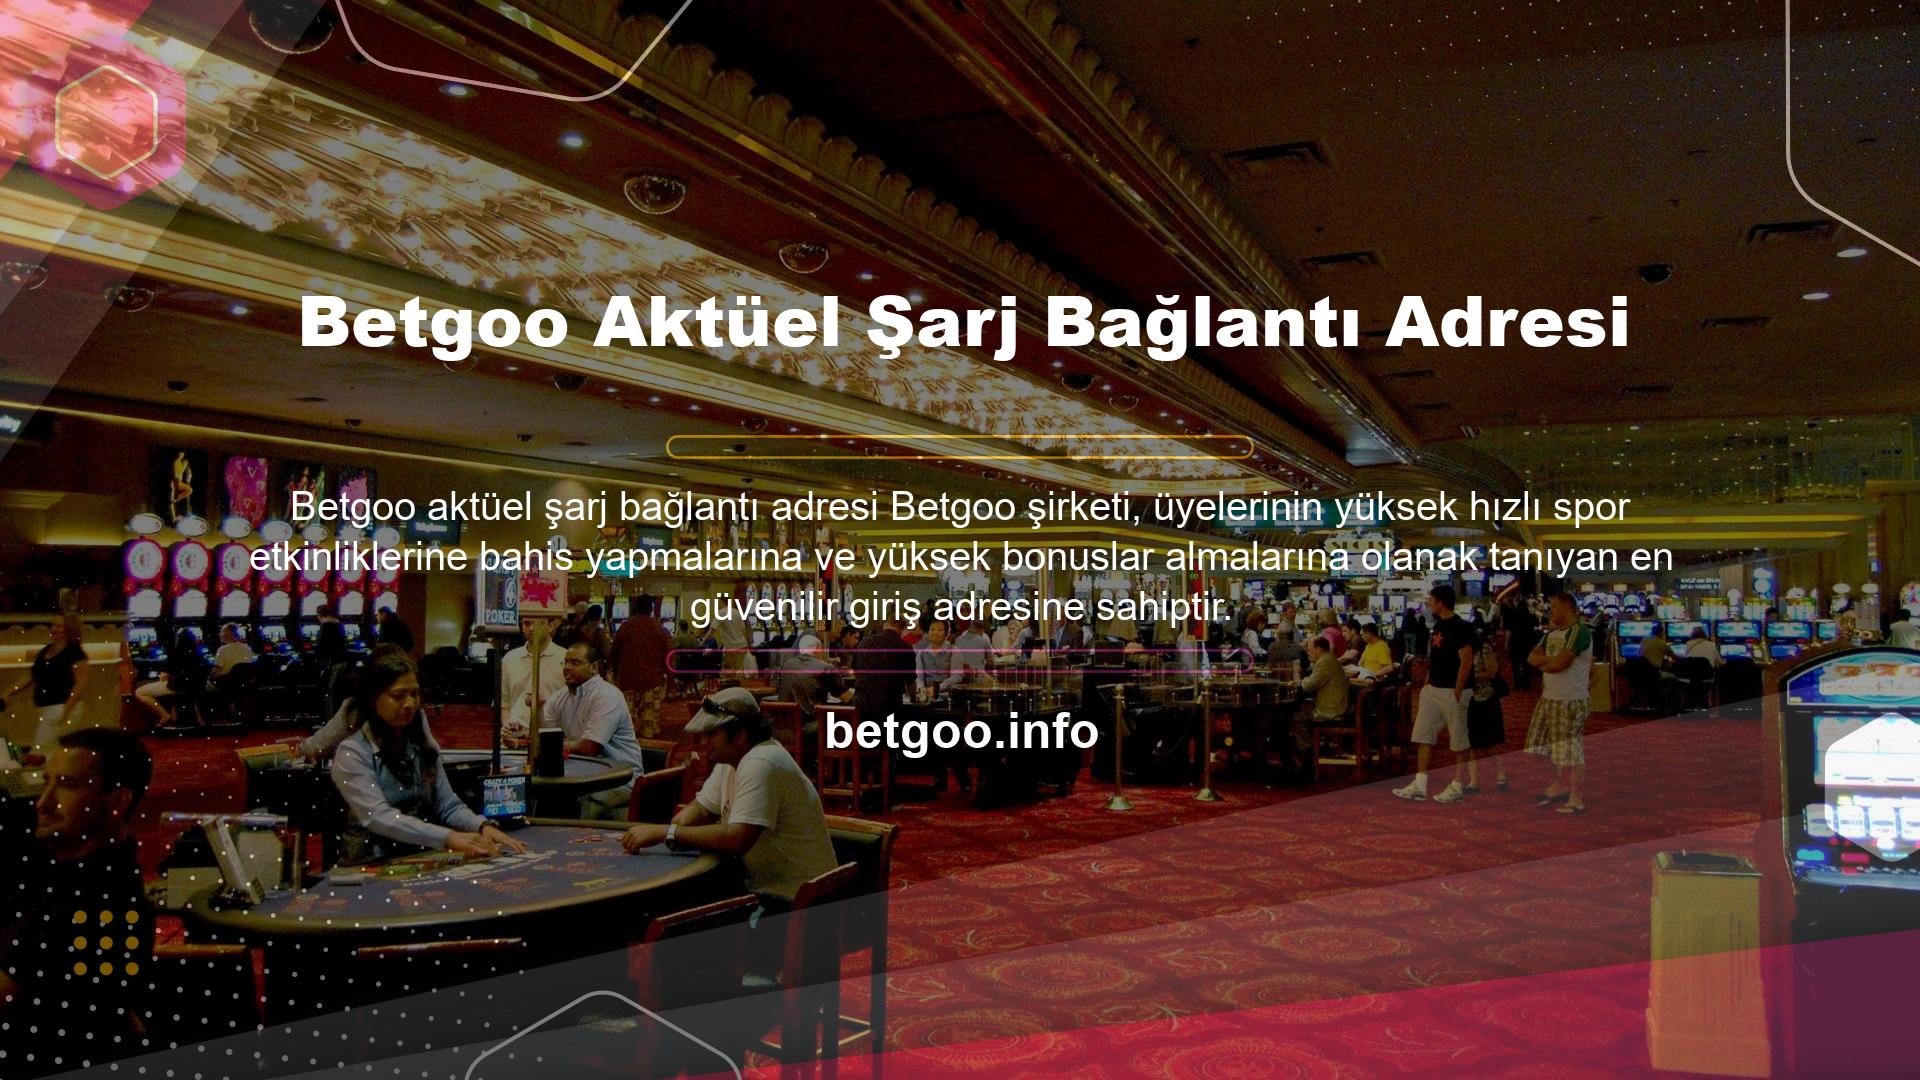 Mevcut Betgoo giriş adresi üzerinden bu siteye üye olmak için herhangi bir yatırım seçeneğini seçebilirsiniz